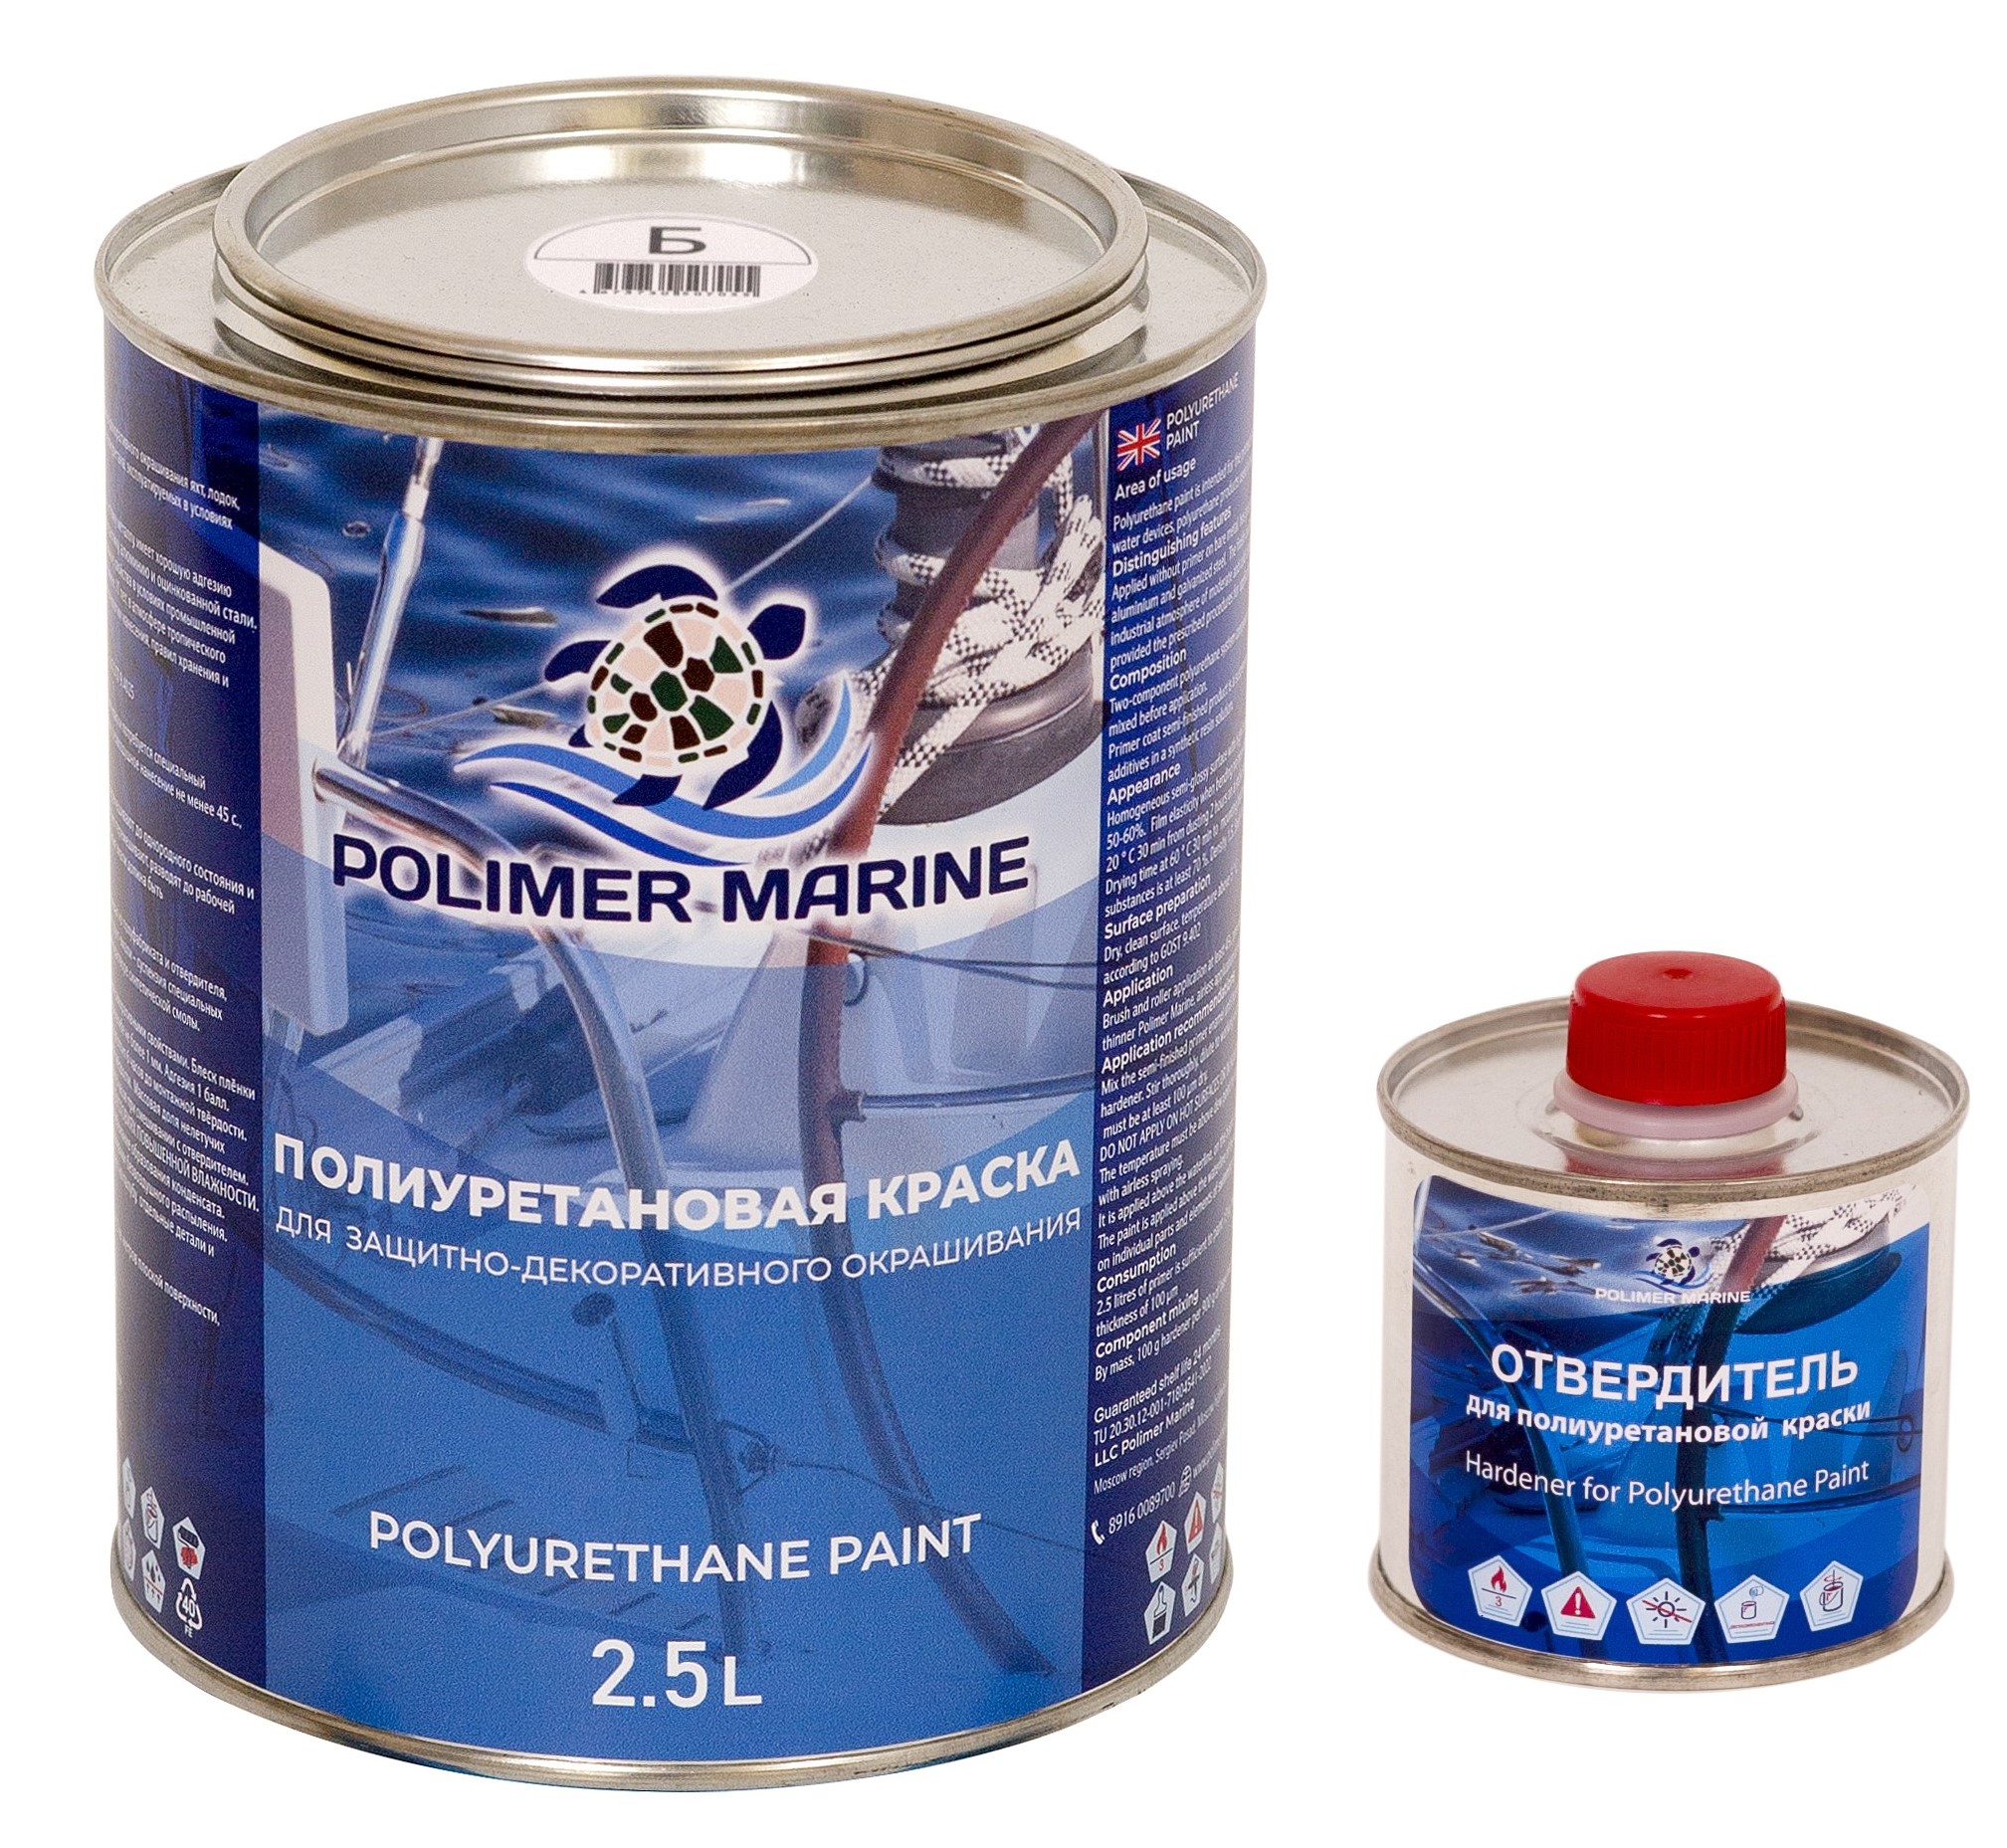 Полиуретановая краска Polimer Marine КП Кп25б белая 2.5 л двухкомпонентная 2К двухкомпонентная полиуретановая краска polimer marine